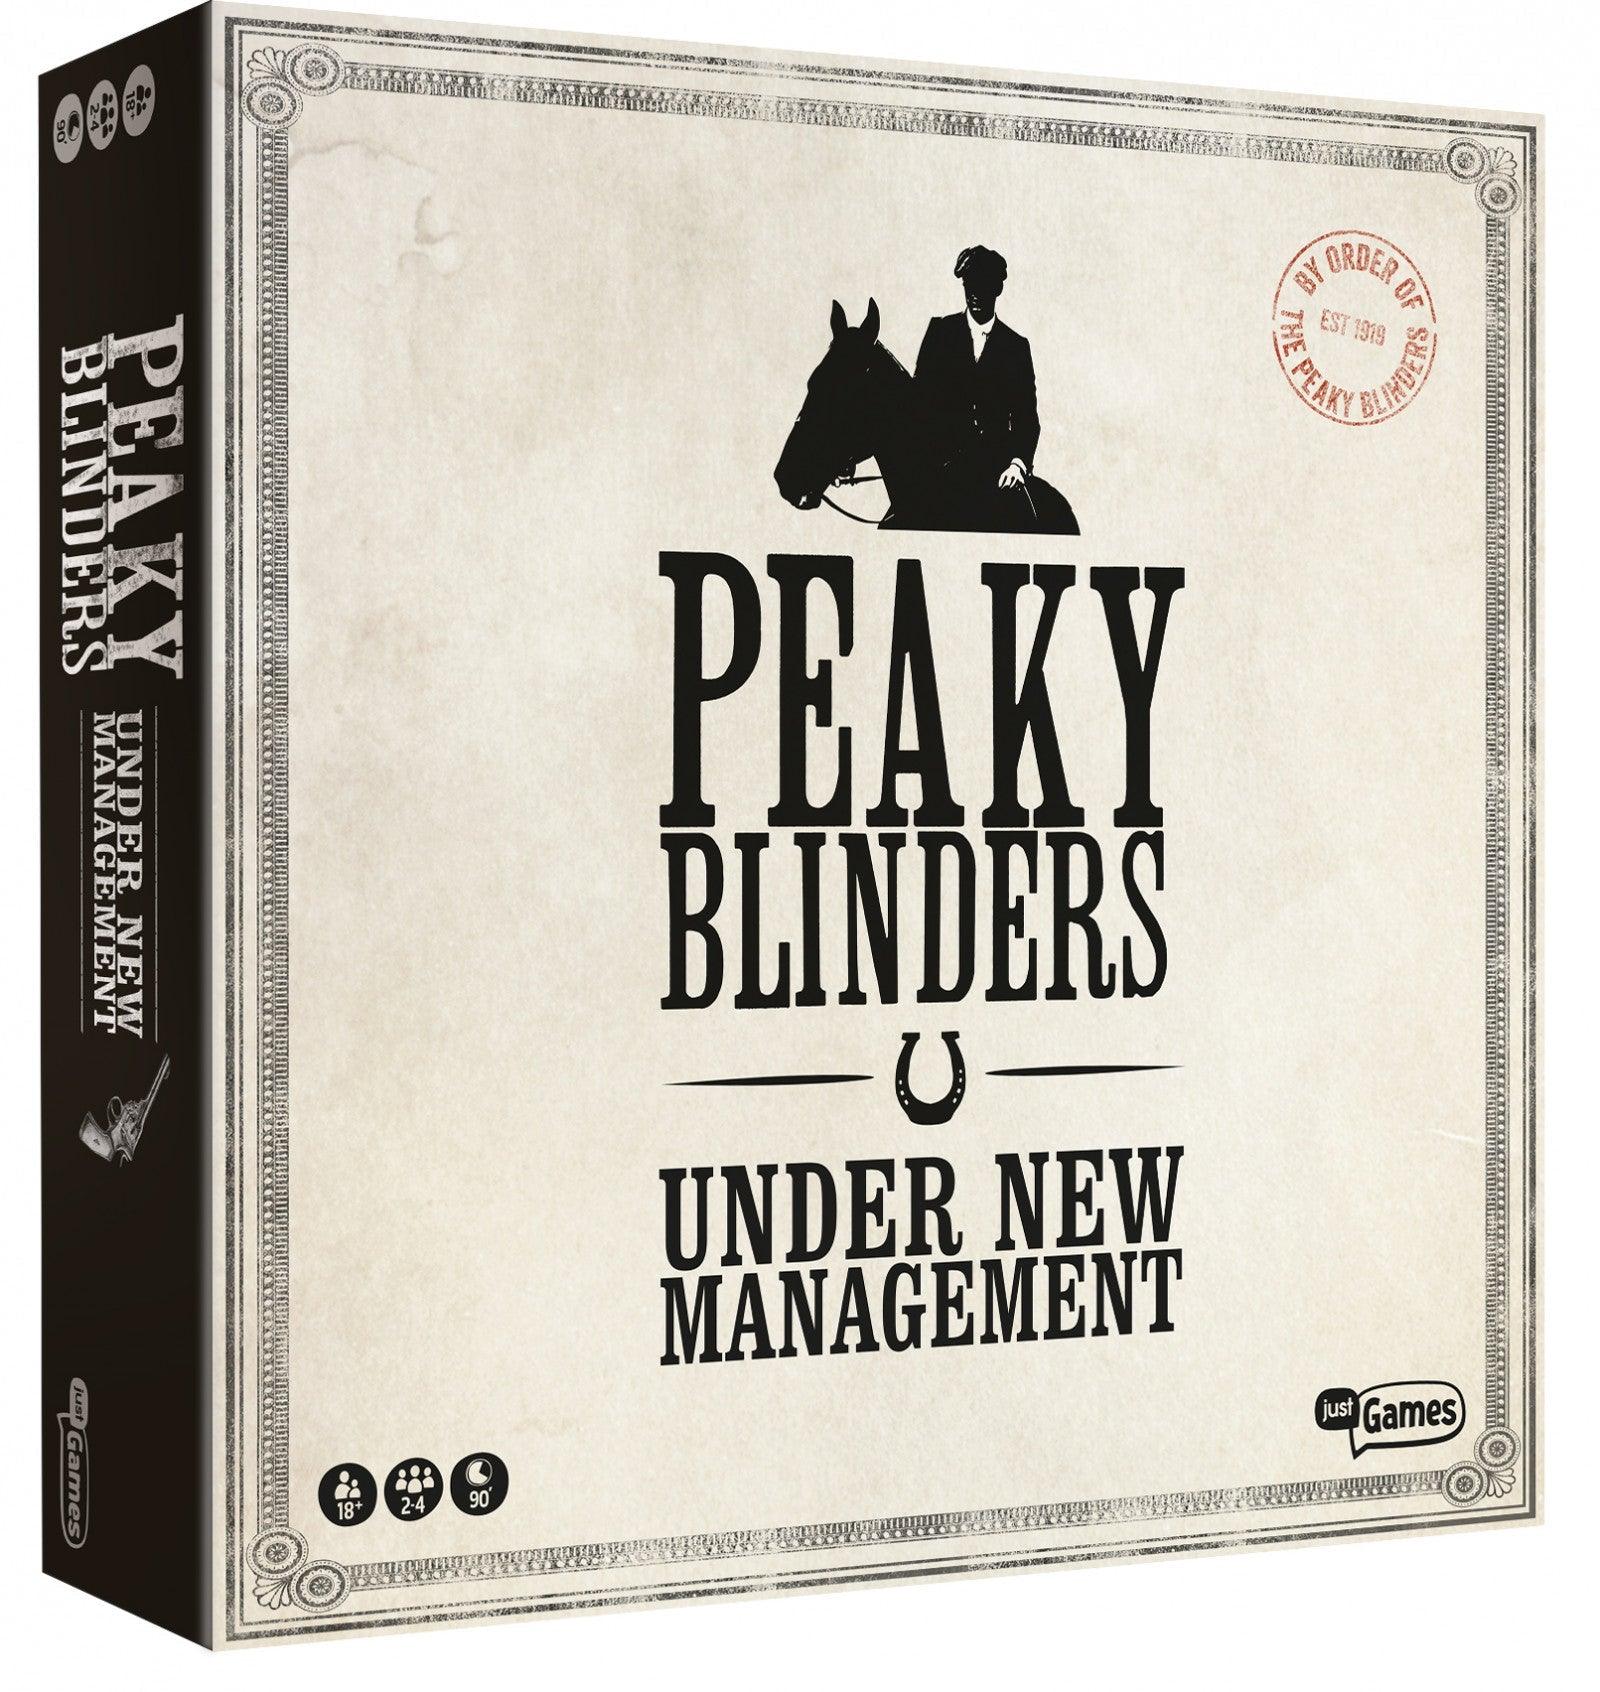 VR-77303 Peaky Blinders - Just Games - Titan Pop Culture